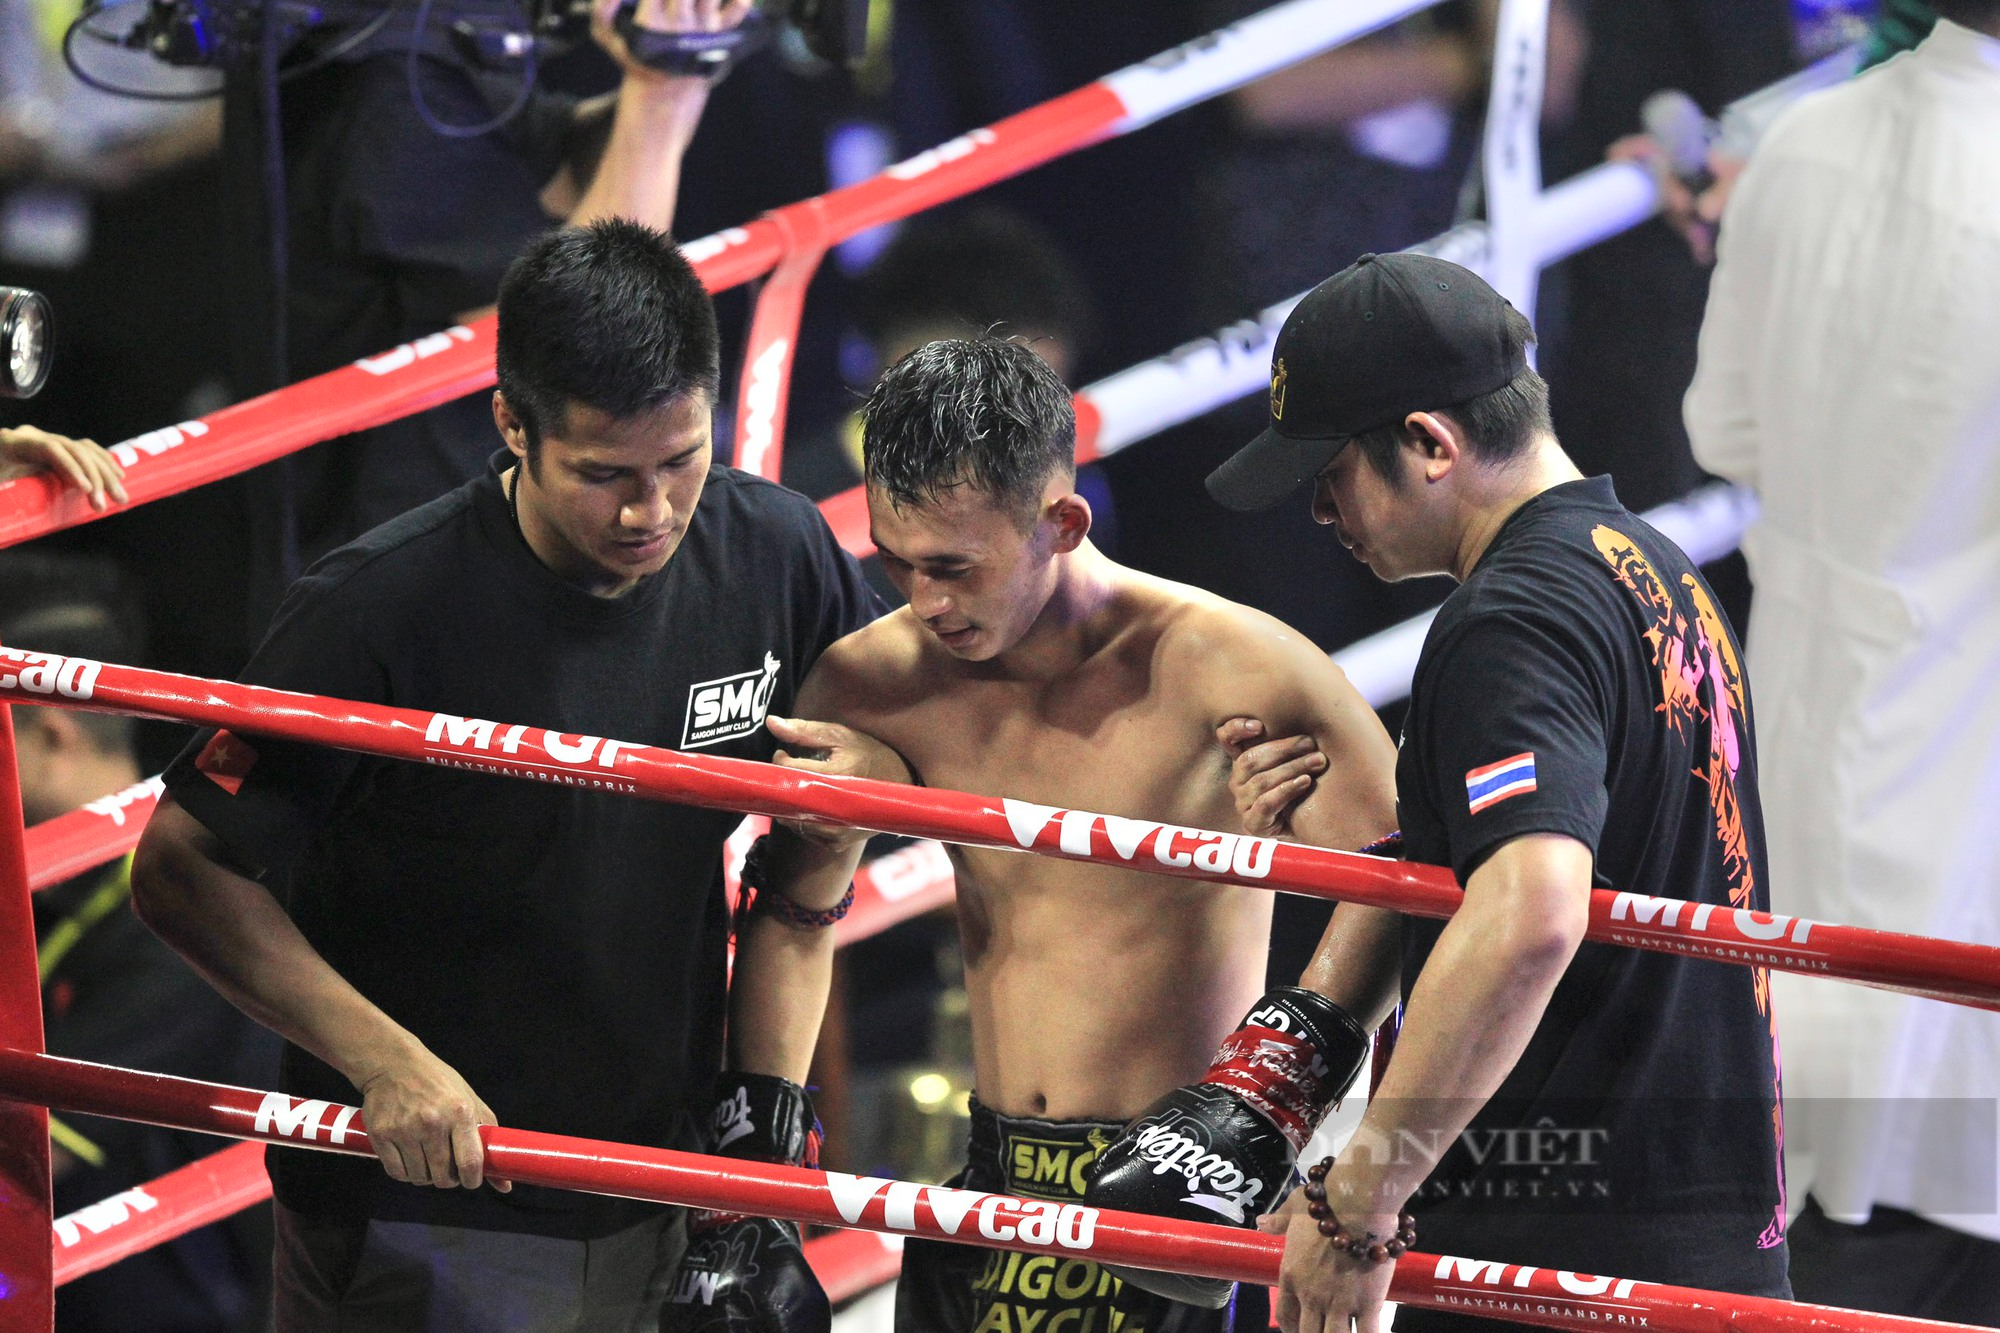 Liên tục cho võ sĩ Thái đo đài, nhà vô địch SEA Games Huỳnh Văn Tuấn khiến khán giả phấn khích - Ảnh 14.